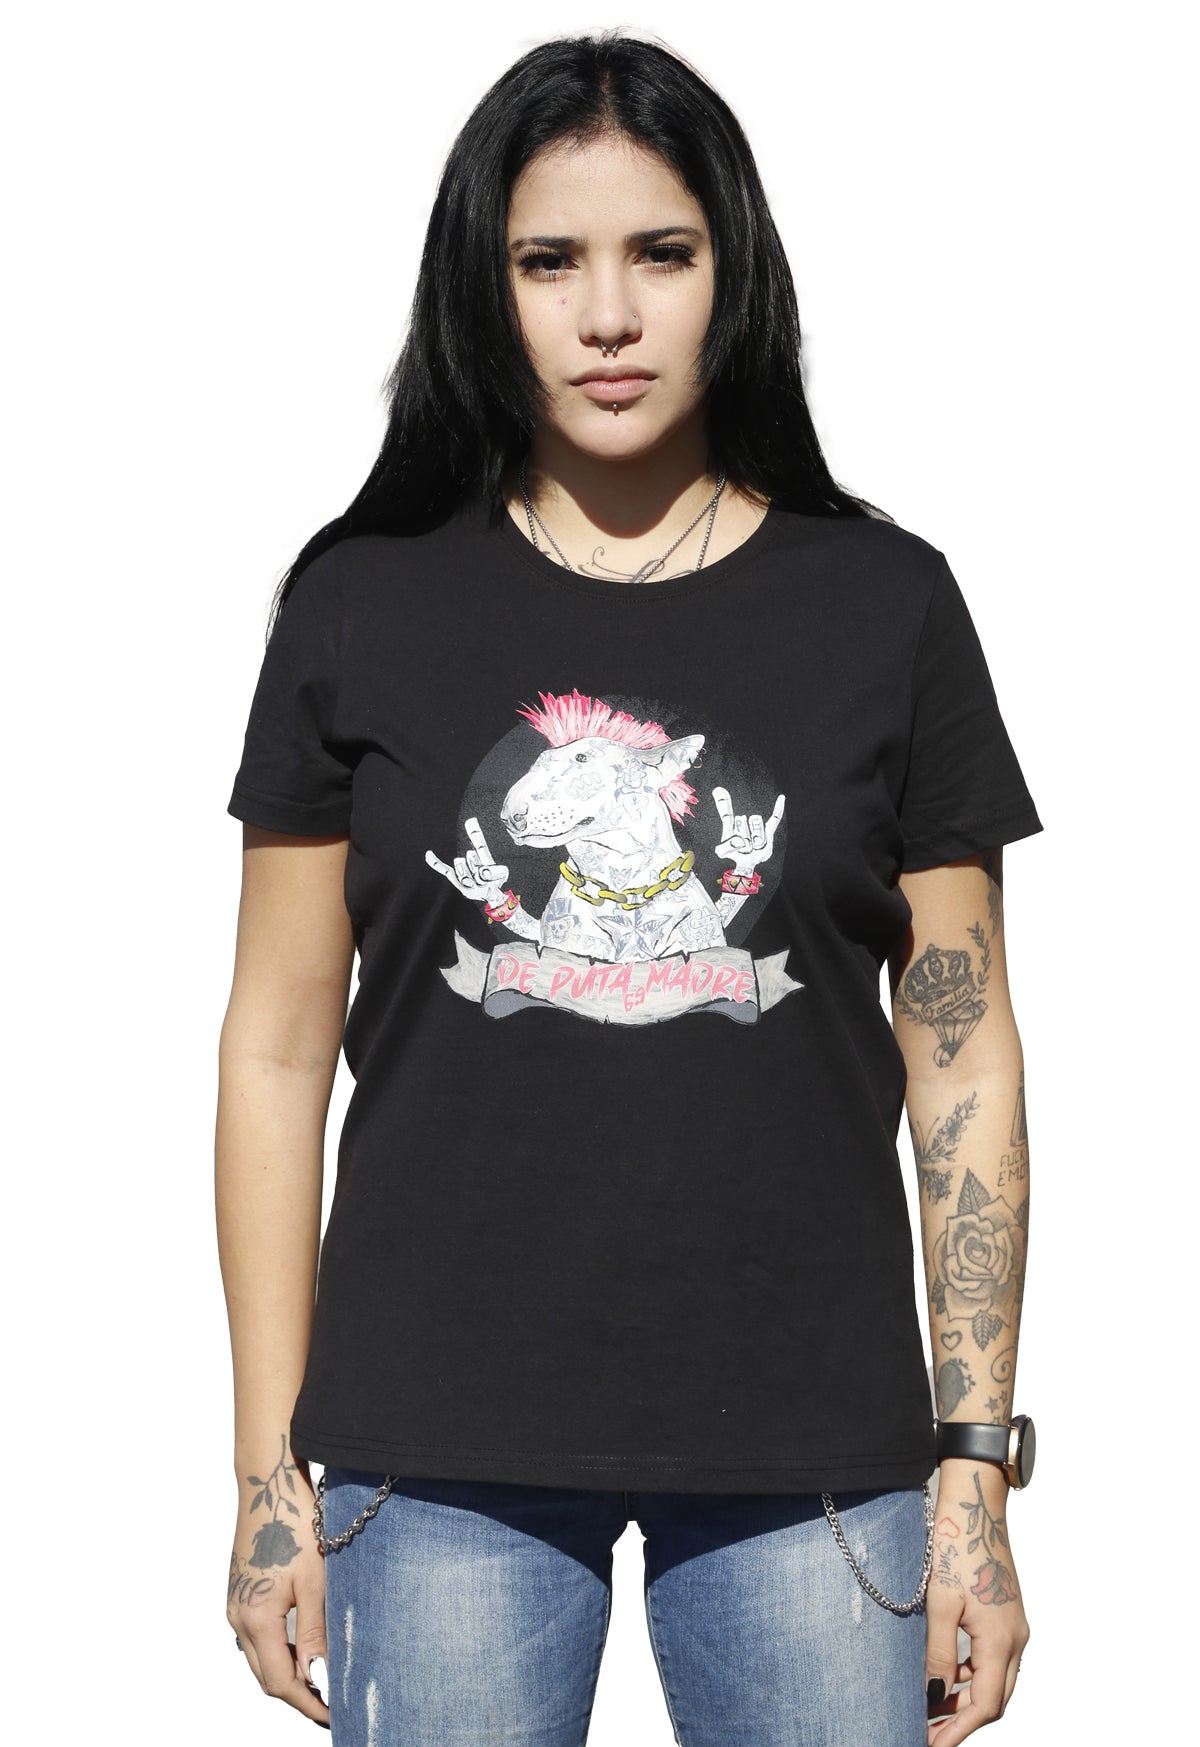 DPM69 T-shirt da donna disegno fatto a mano in italia cool doggy style